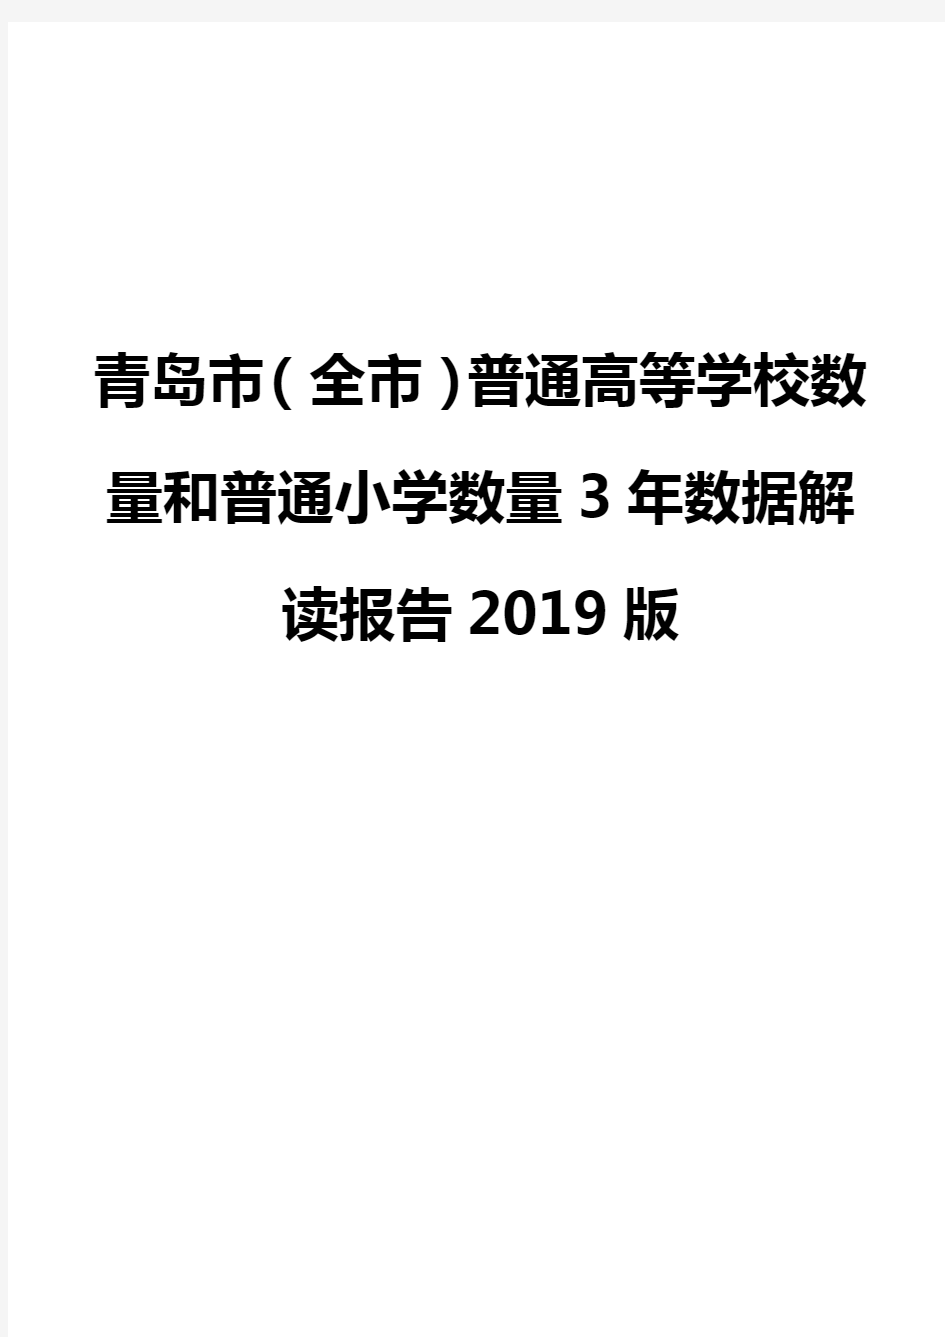 青岛市(全市)普通高等学校数量和普通小学数量3年数据解读报告2019版